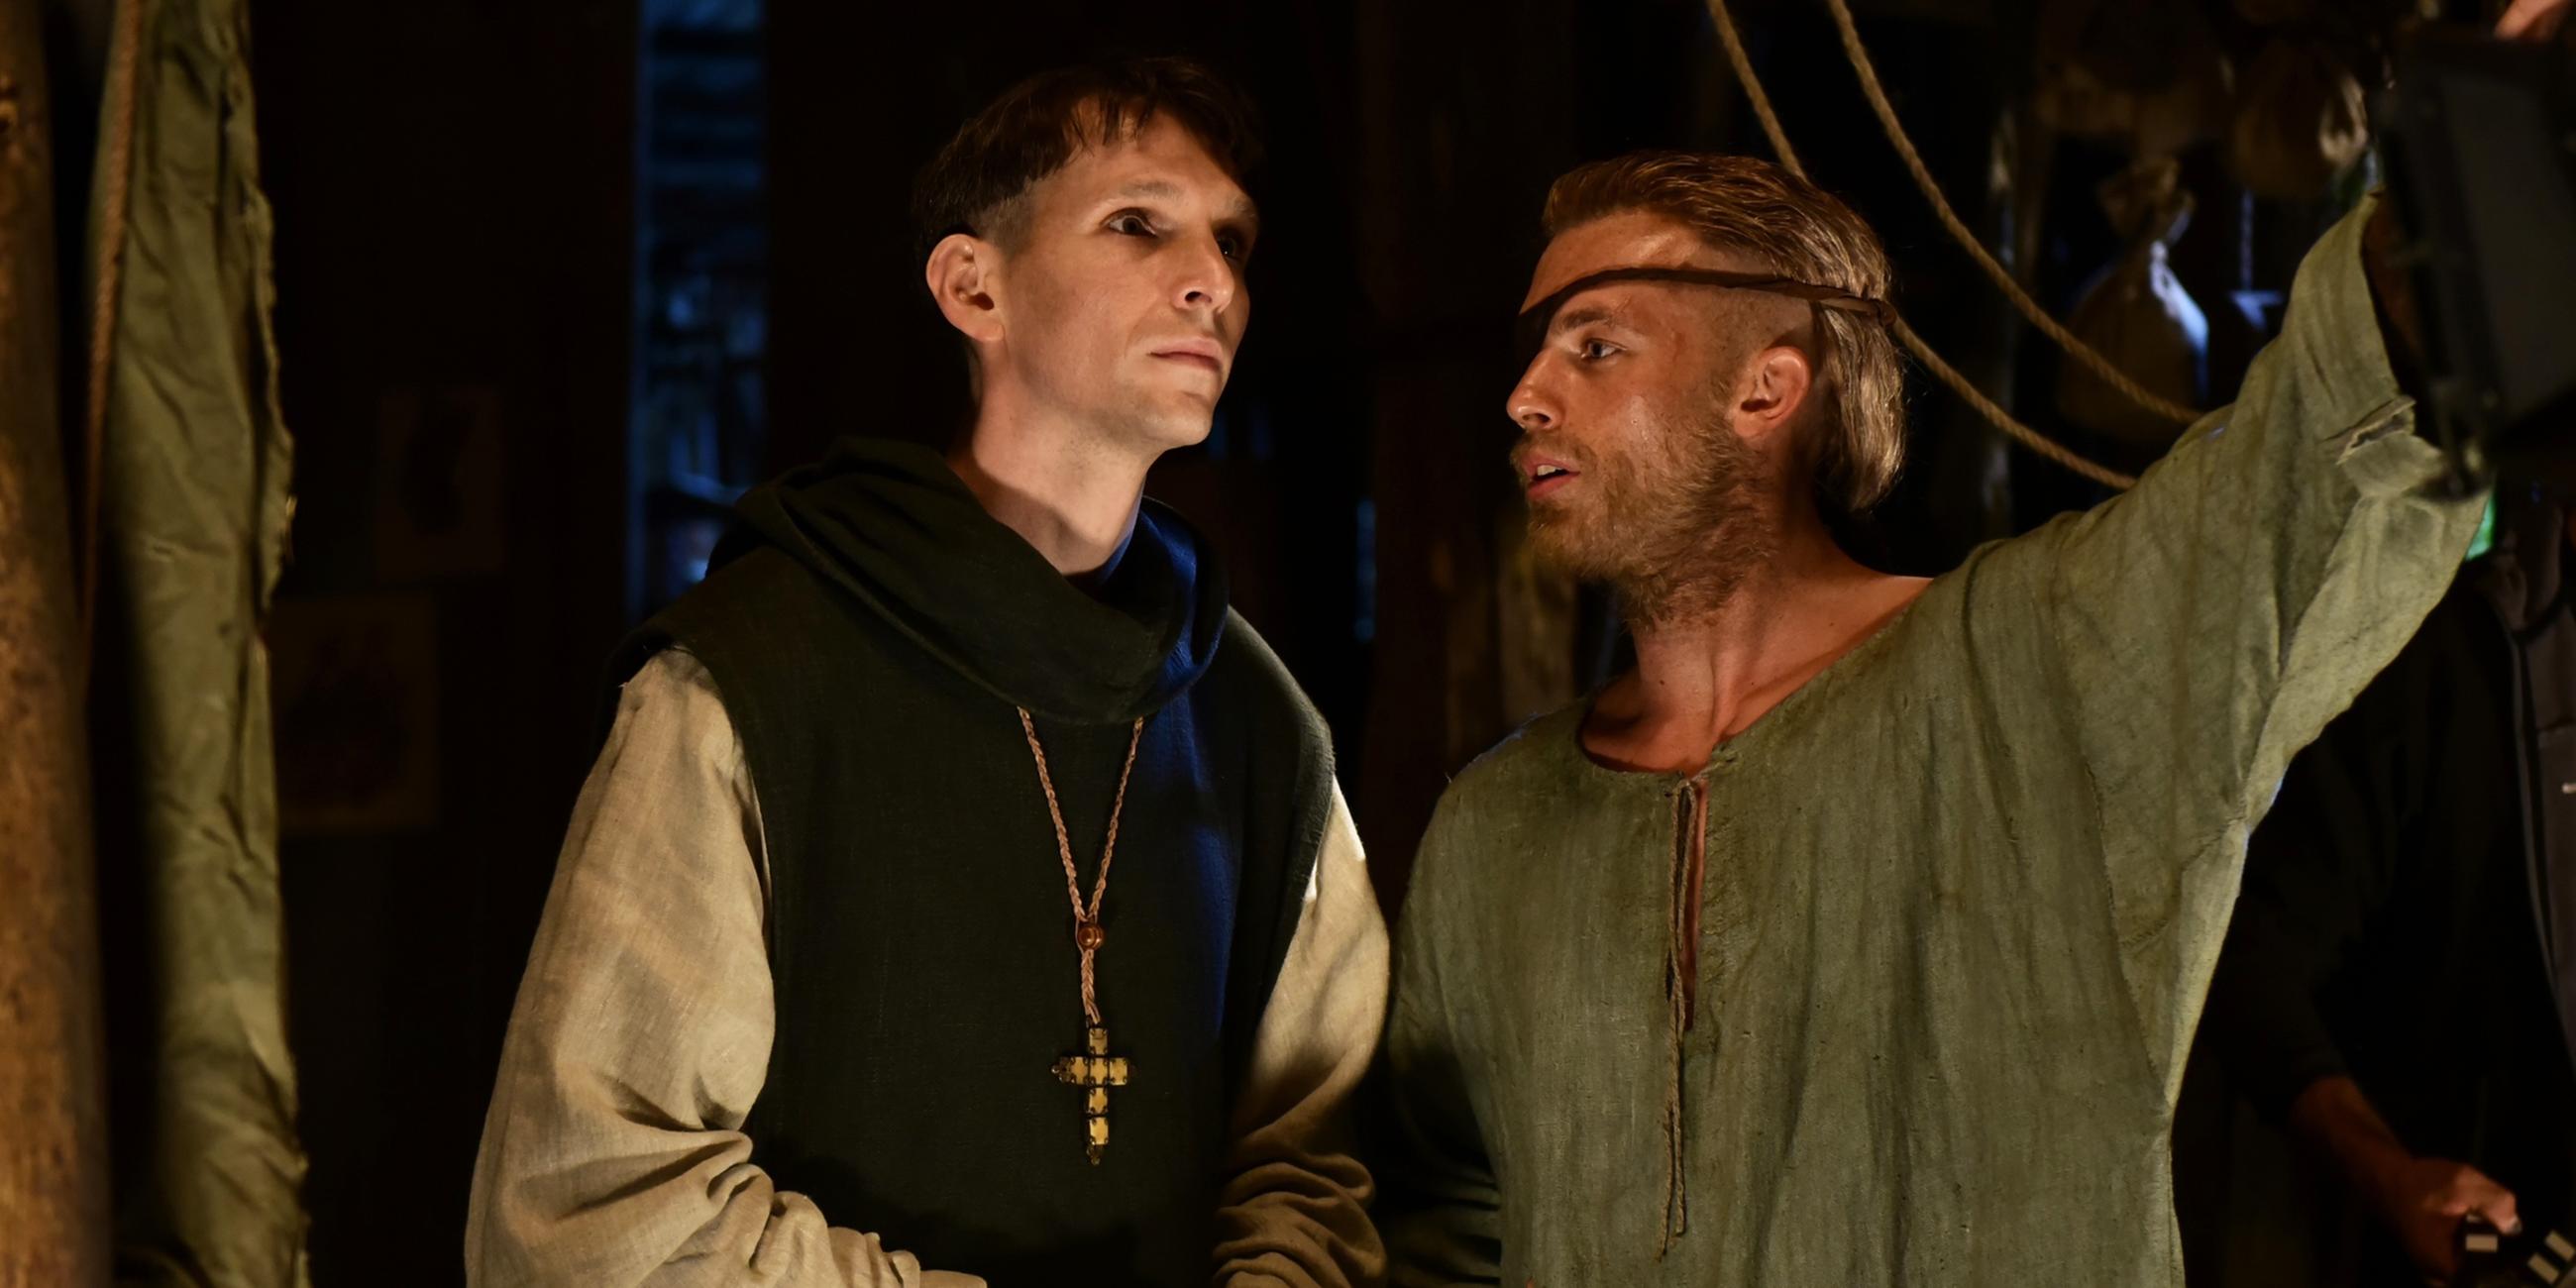 Narziss (Sabin Tambrea) und Goldmund (Jannis Niewöhner) stehen nebeneinander im Kloster. Goldmund schaut Narziss an und spricht zu ihm, während er weisend seinen Arm ausstreckt.